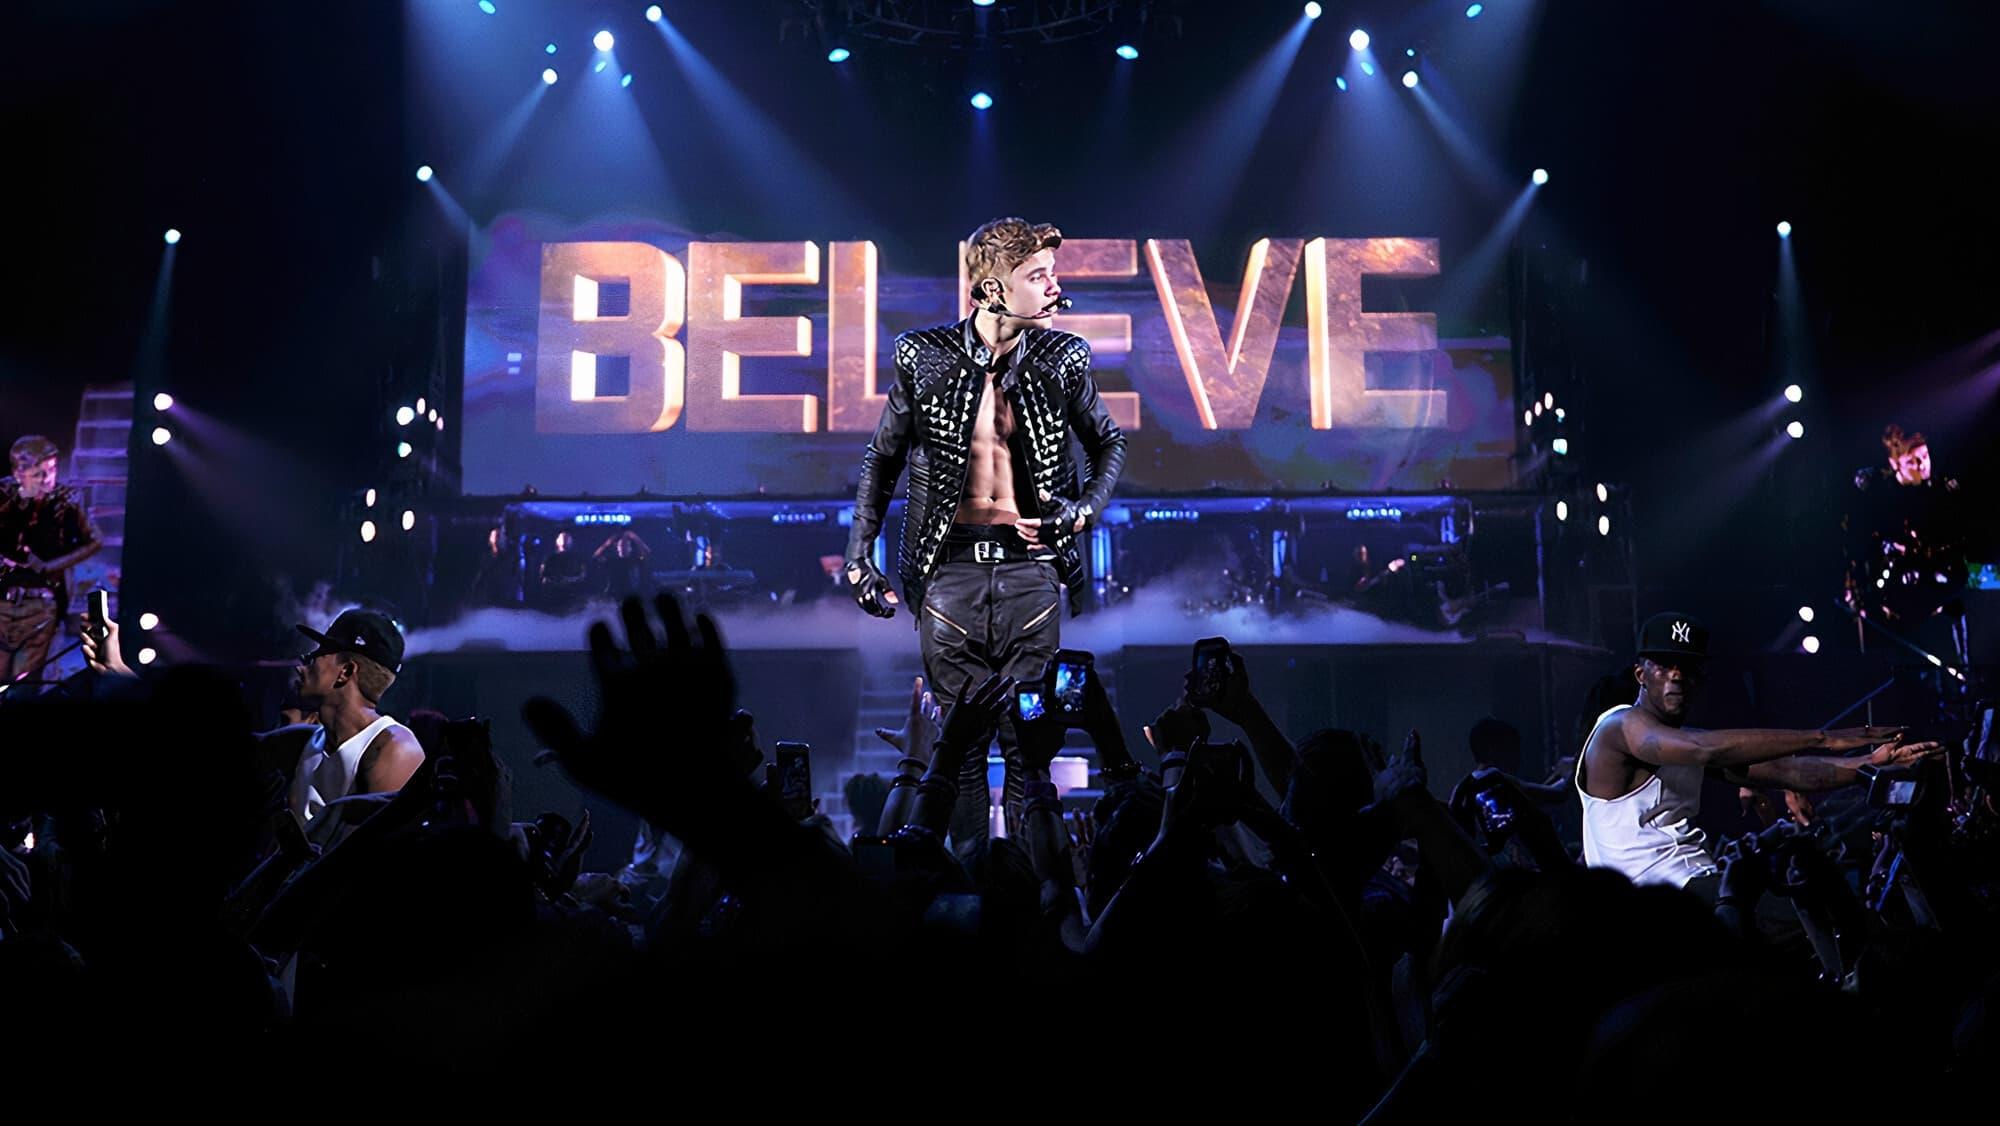 Justin Bieber's Believe backdrop